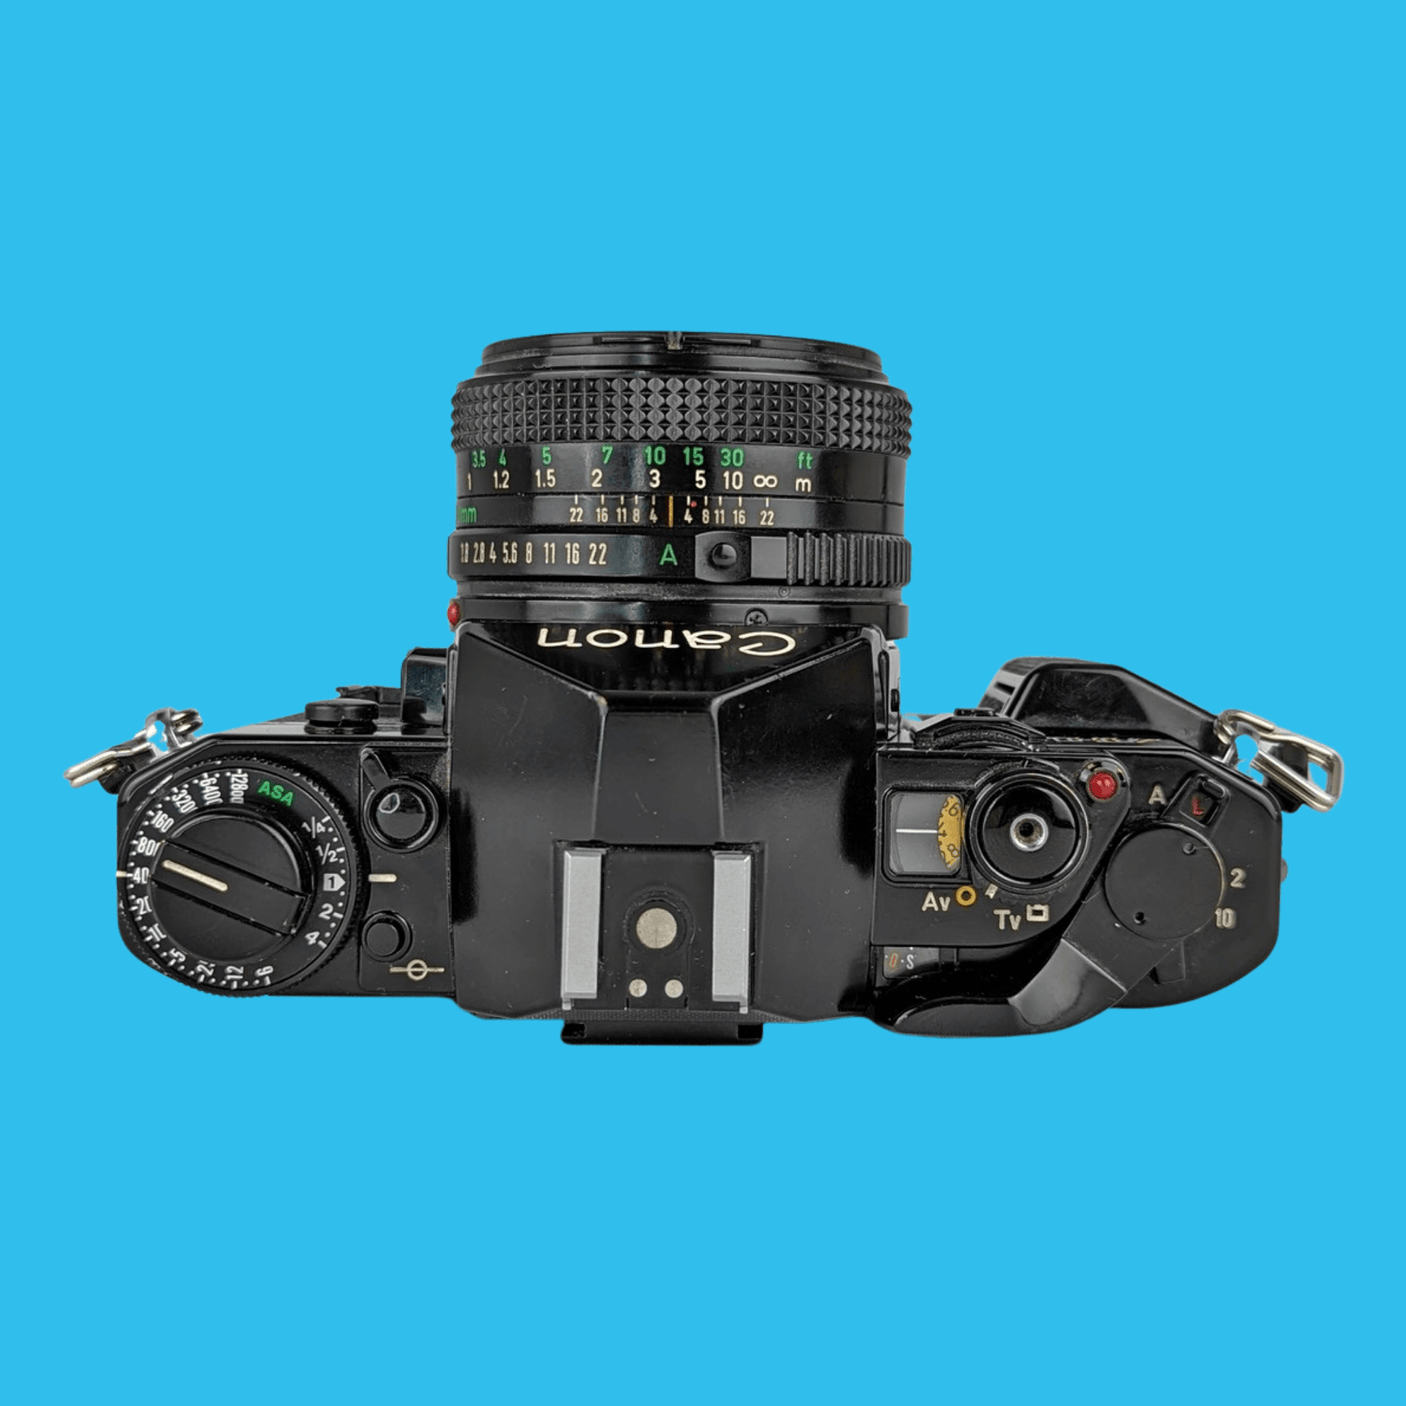 完動品 ◉Canon AE-1 PROGRAM 単焦点レンズ付き フィルムカメラ 